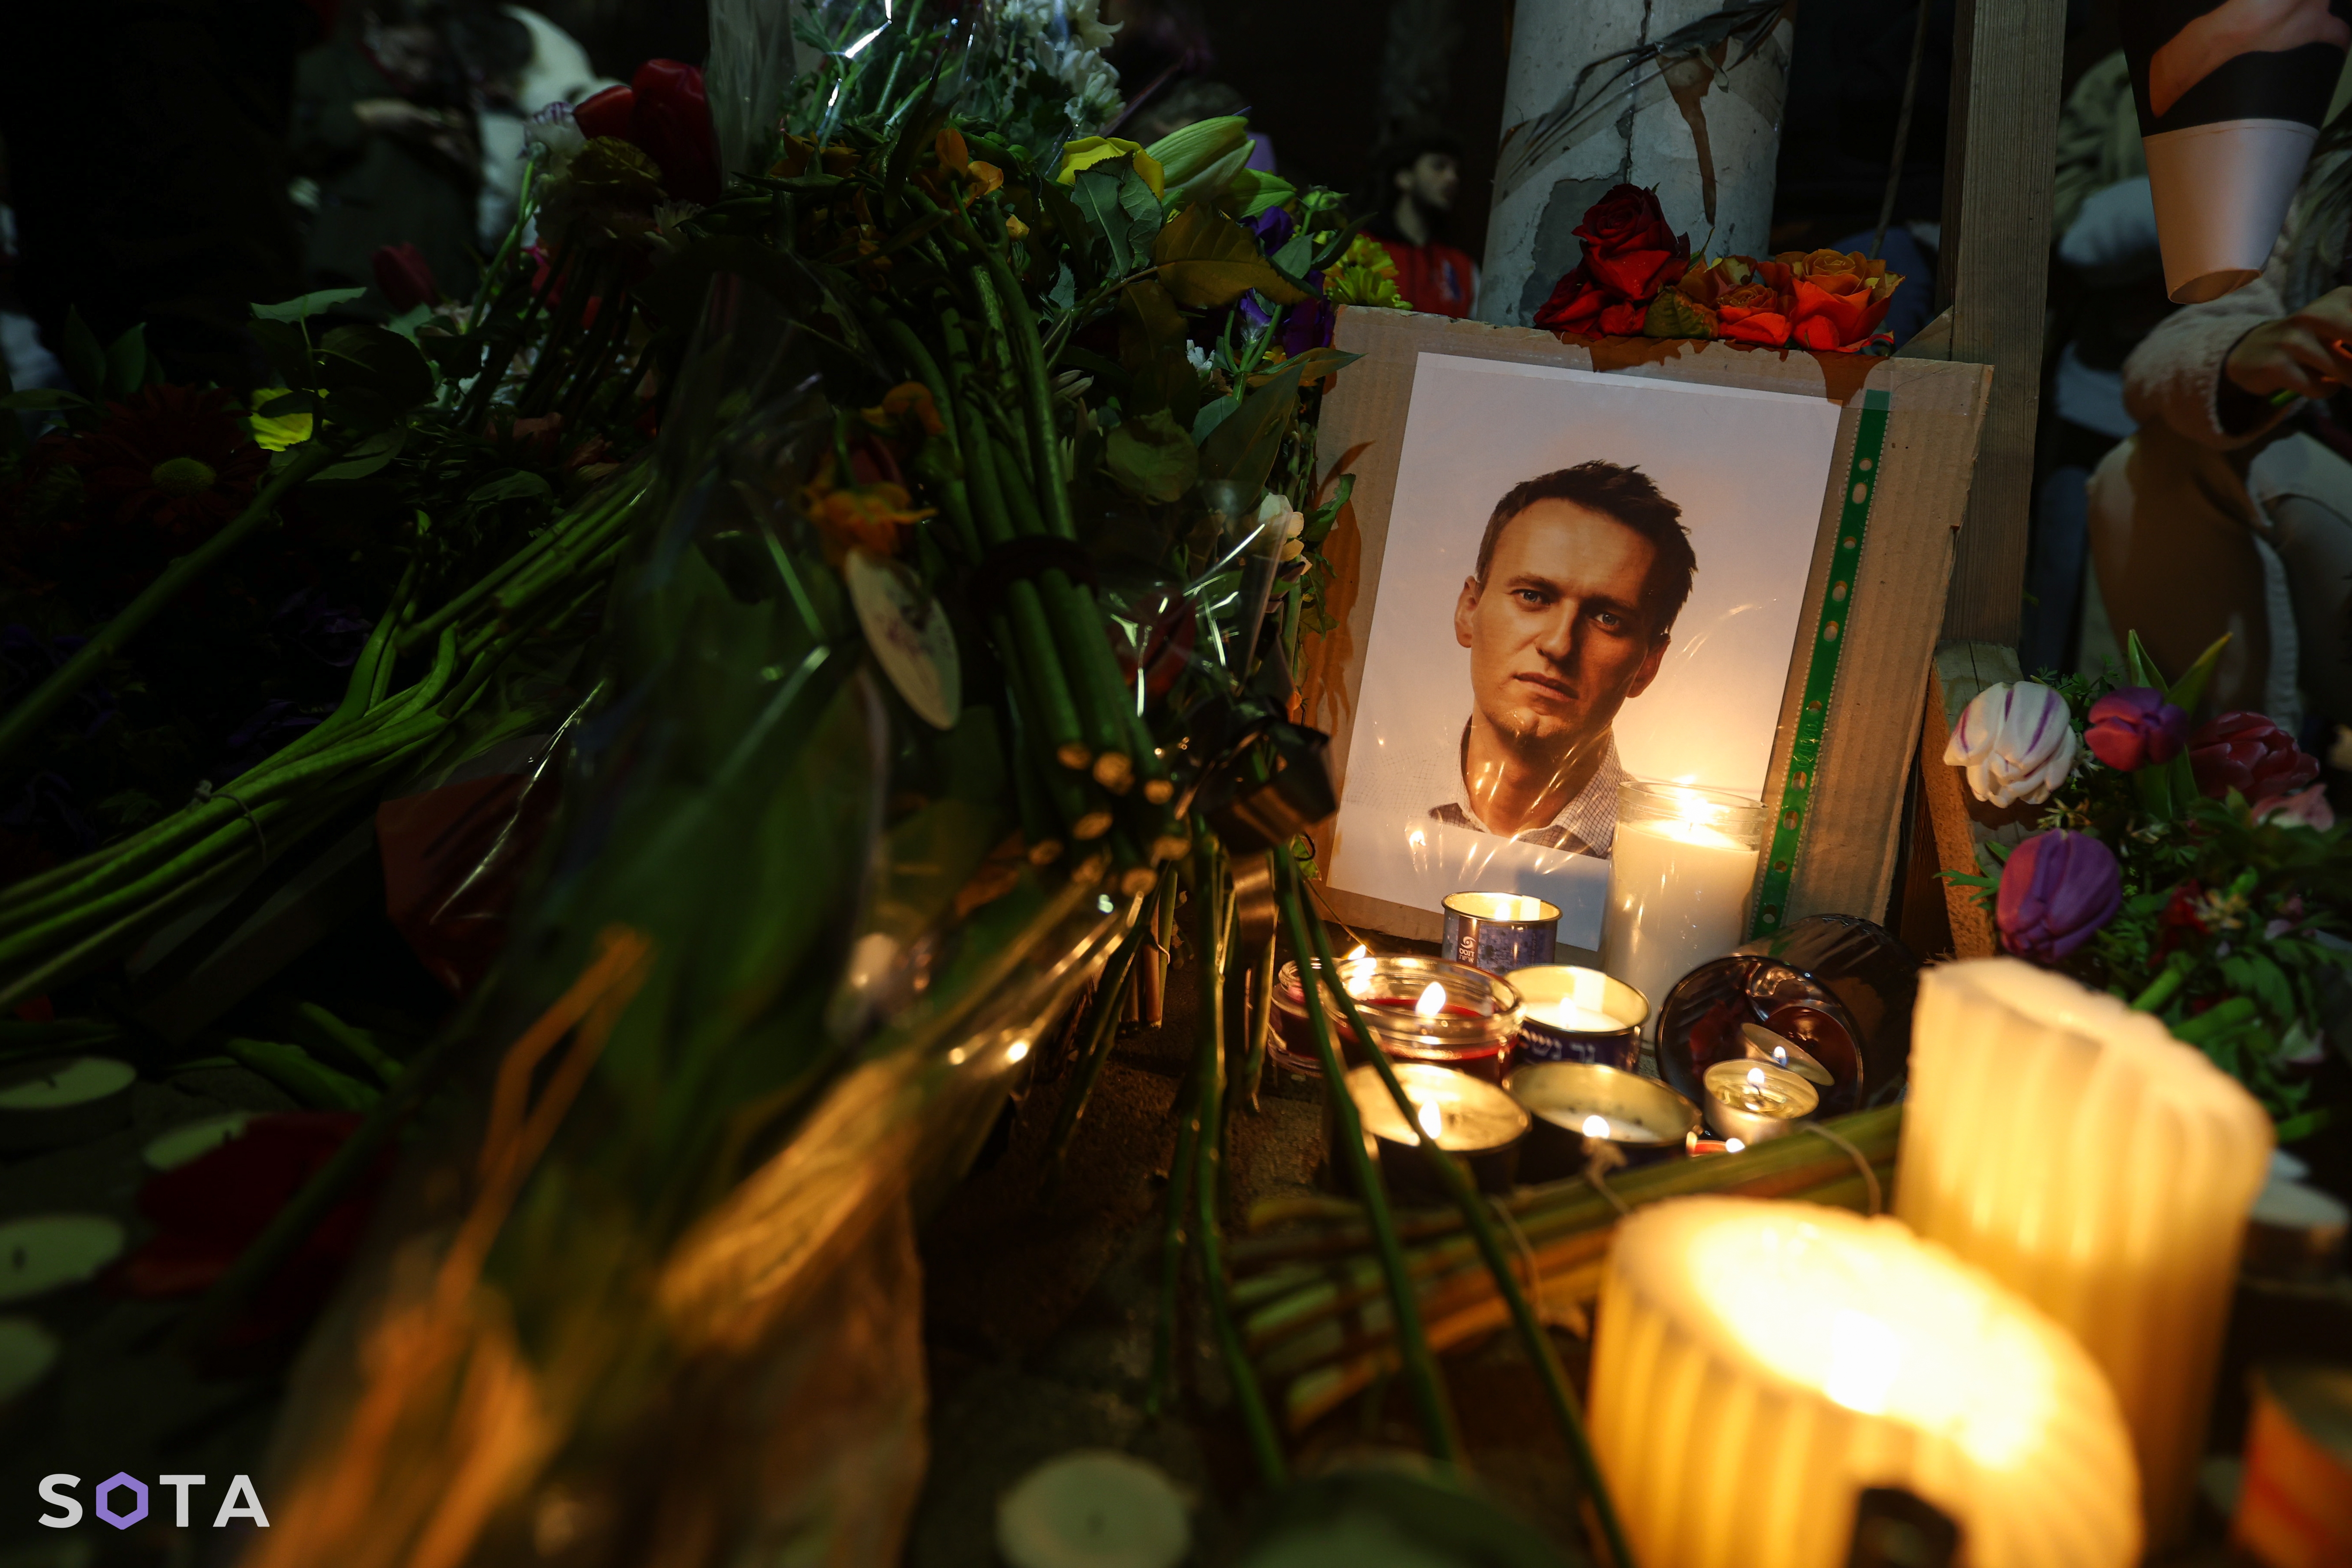 Мемориал Алексея Навального в Тель-Авиве
Ян Хачко / SOTA